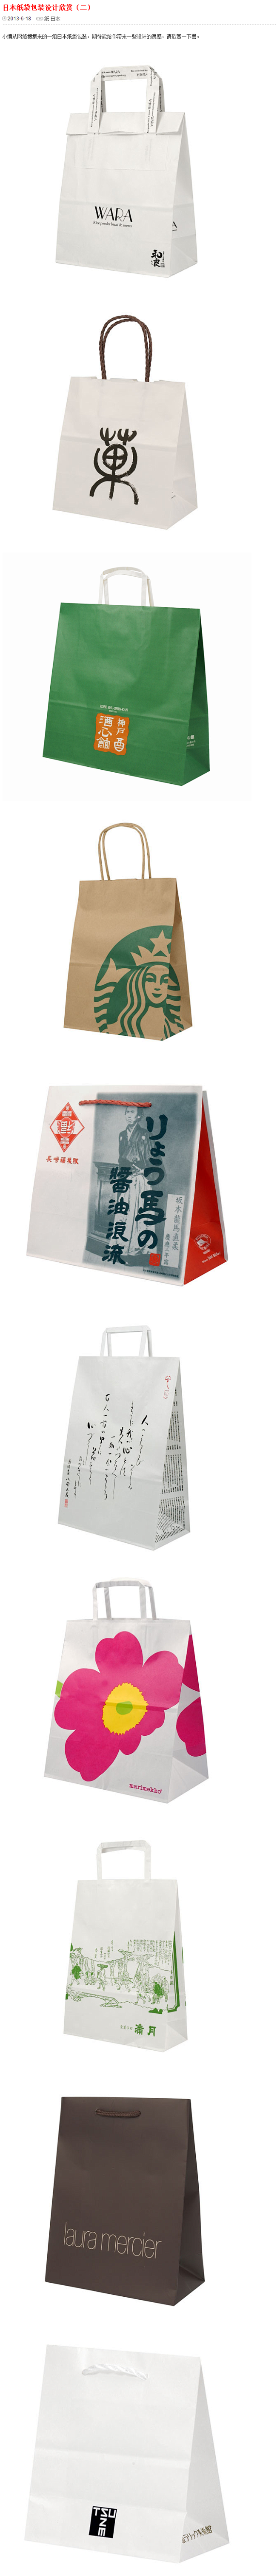 日本纸袋包装设计欣赏（二） - 包装 -...